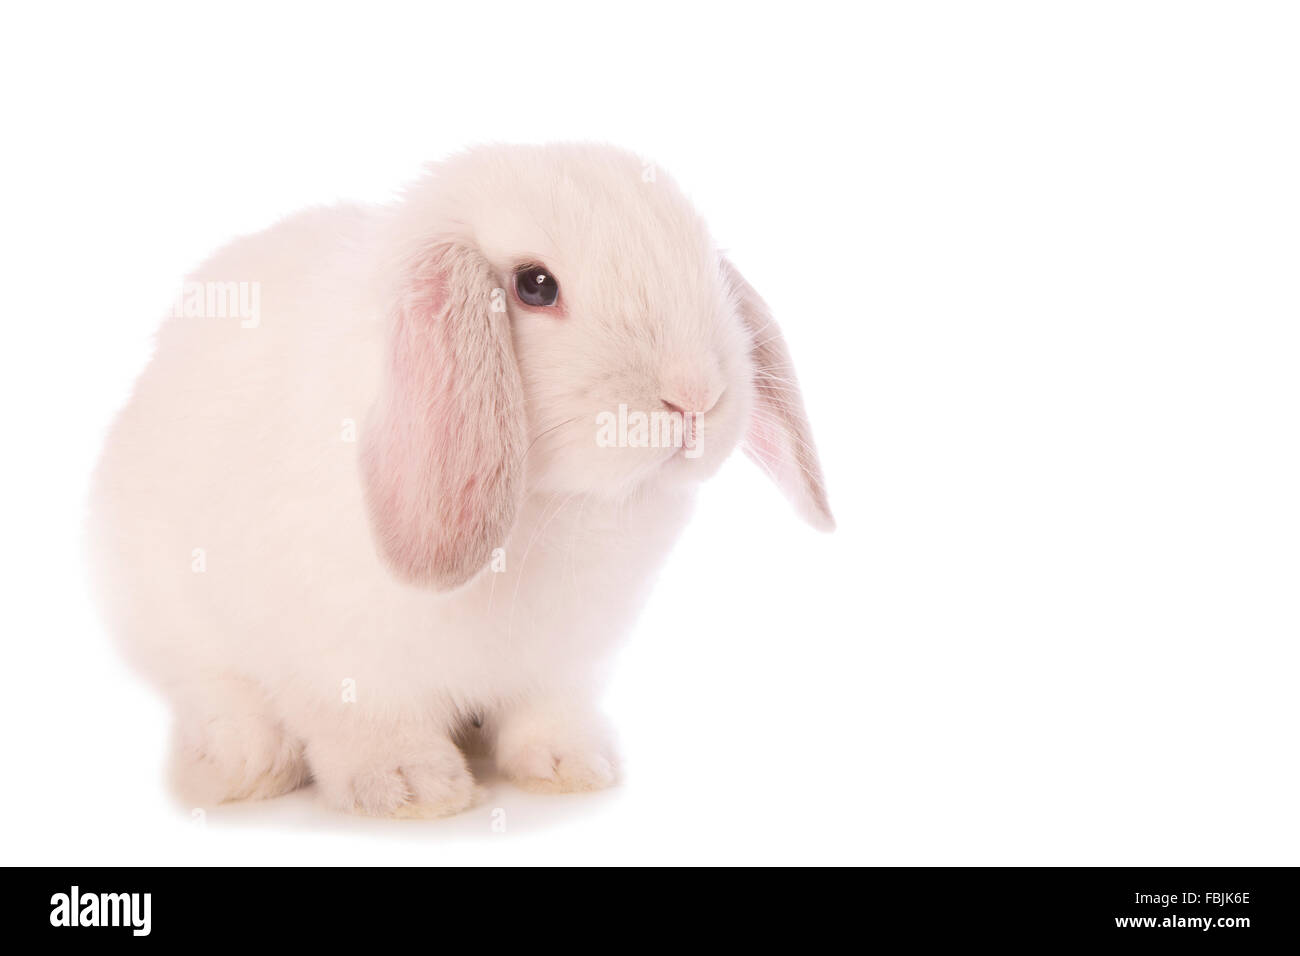 White Mini Lop bunny coniglio isolato su sfondo whtie Foto Stock